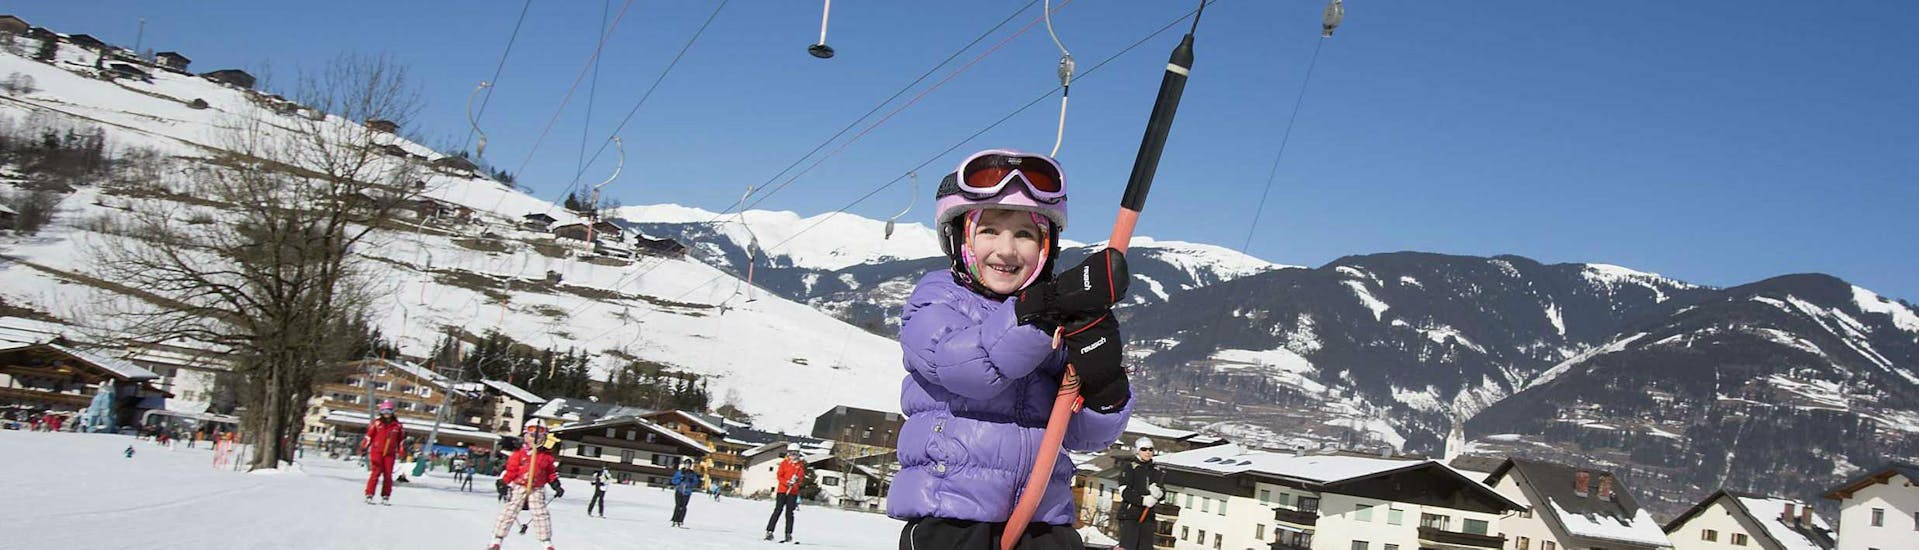 Privater Skikurs für Jugendliche aller Levels.